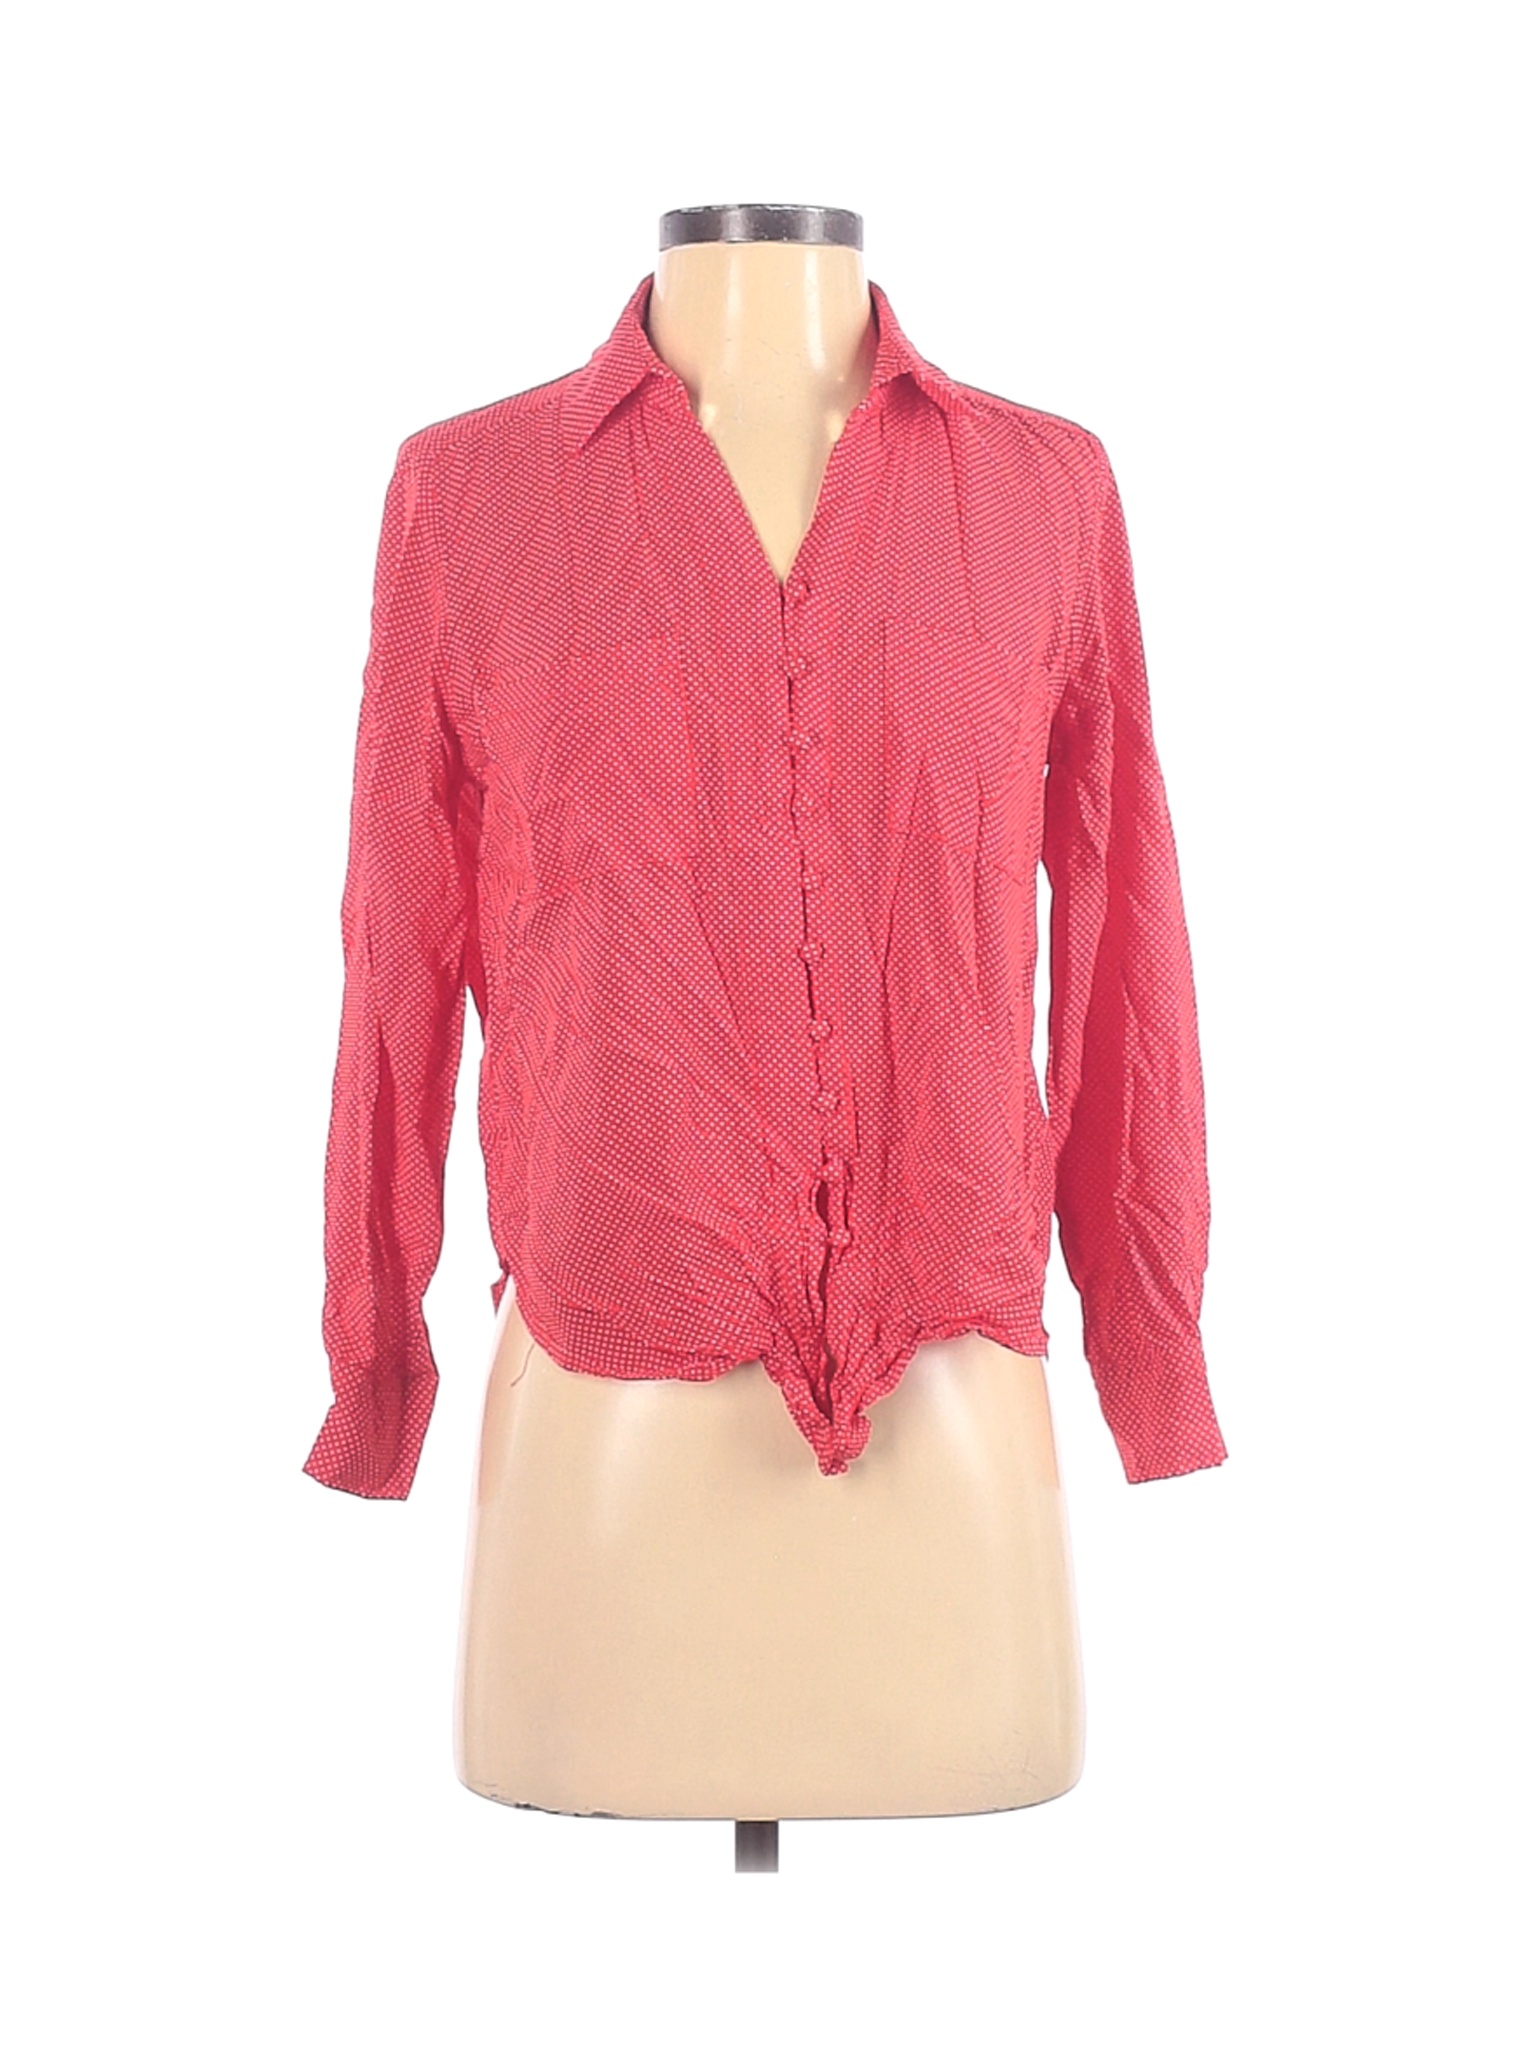 Velvet Heart Women Pink Long Sleeve Blouse XS | eBay